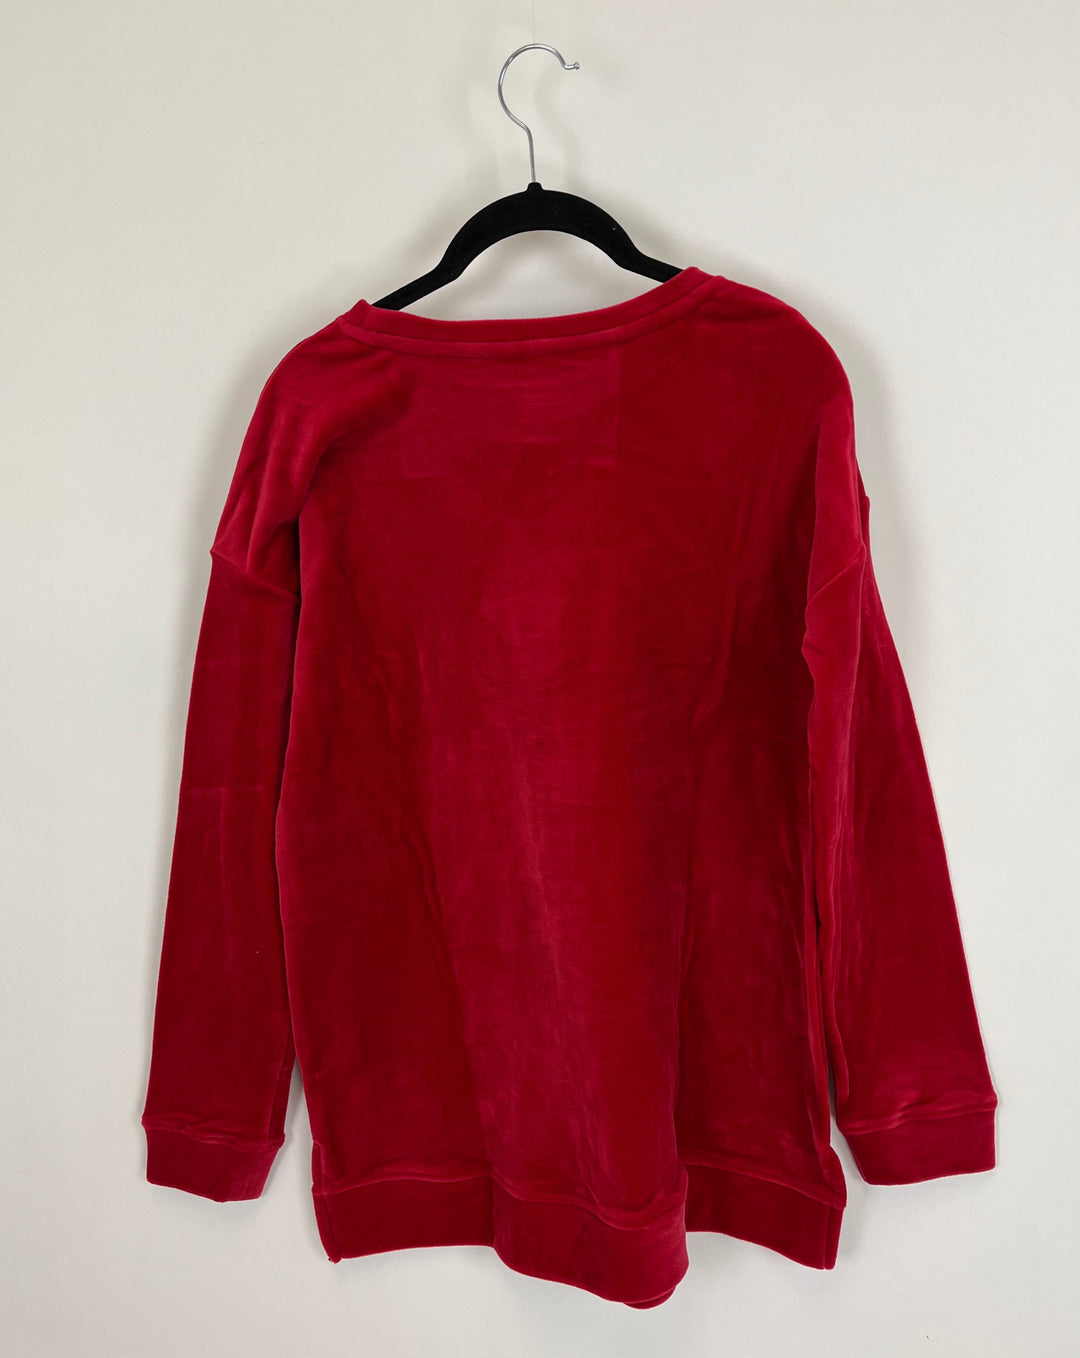 Cherry Red Fleece Top - Size 6/8